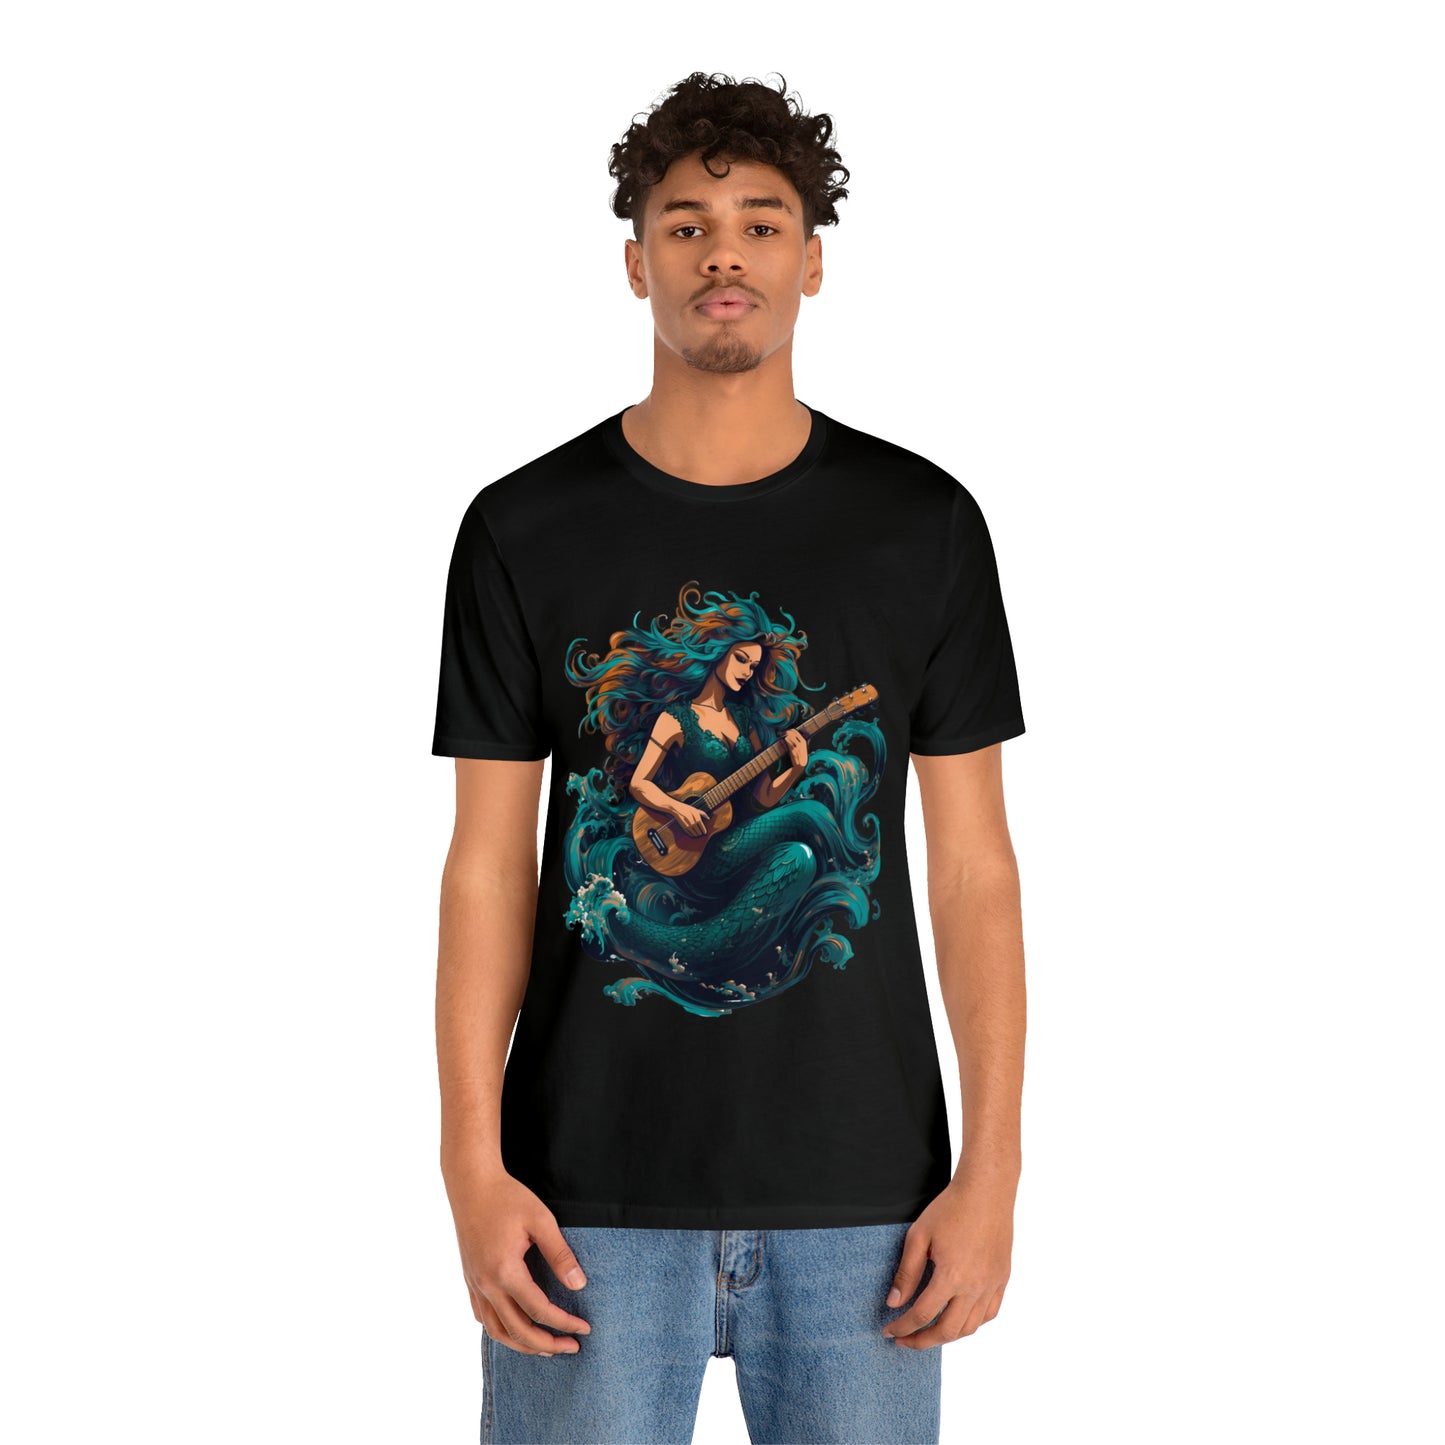 Mermaid and Guitar - T-shirt